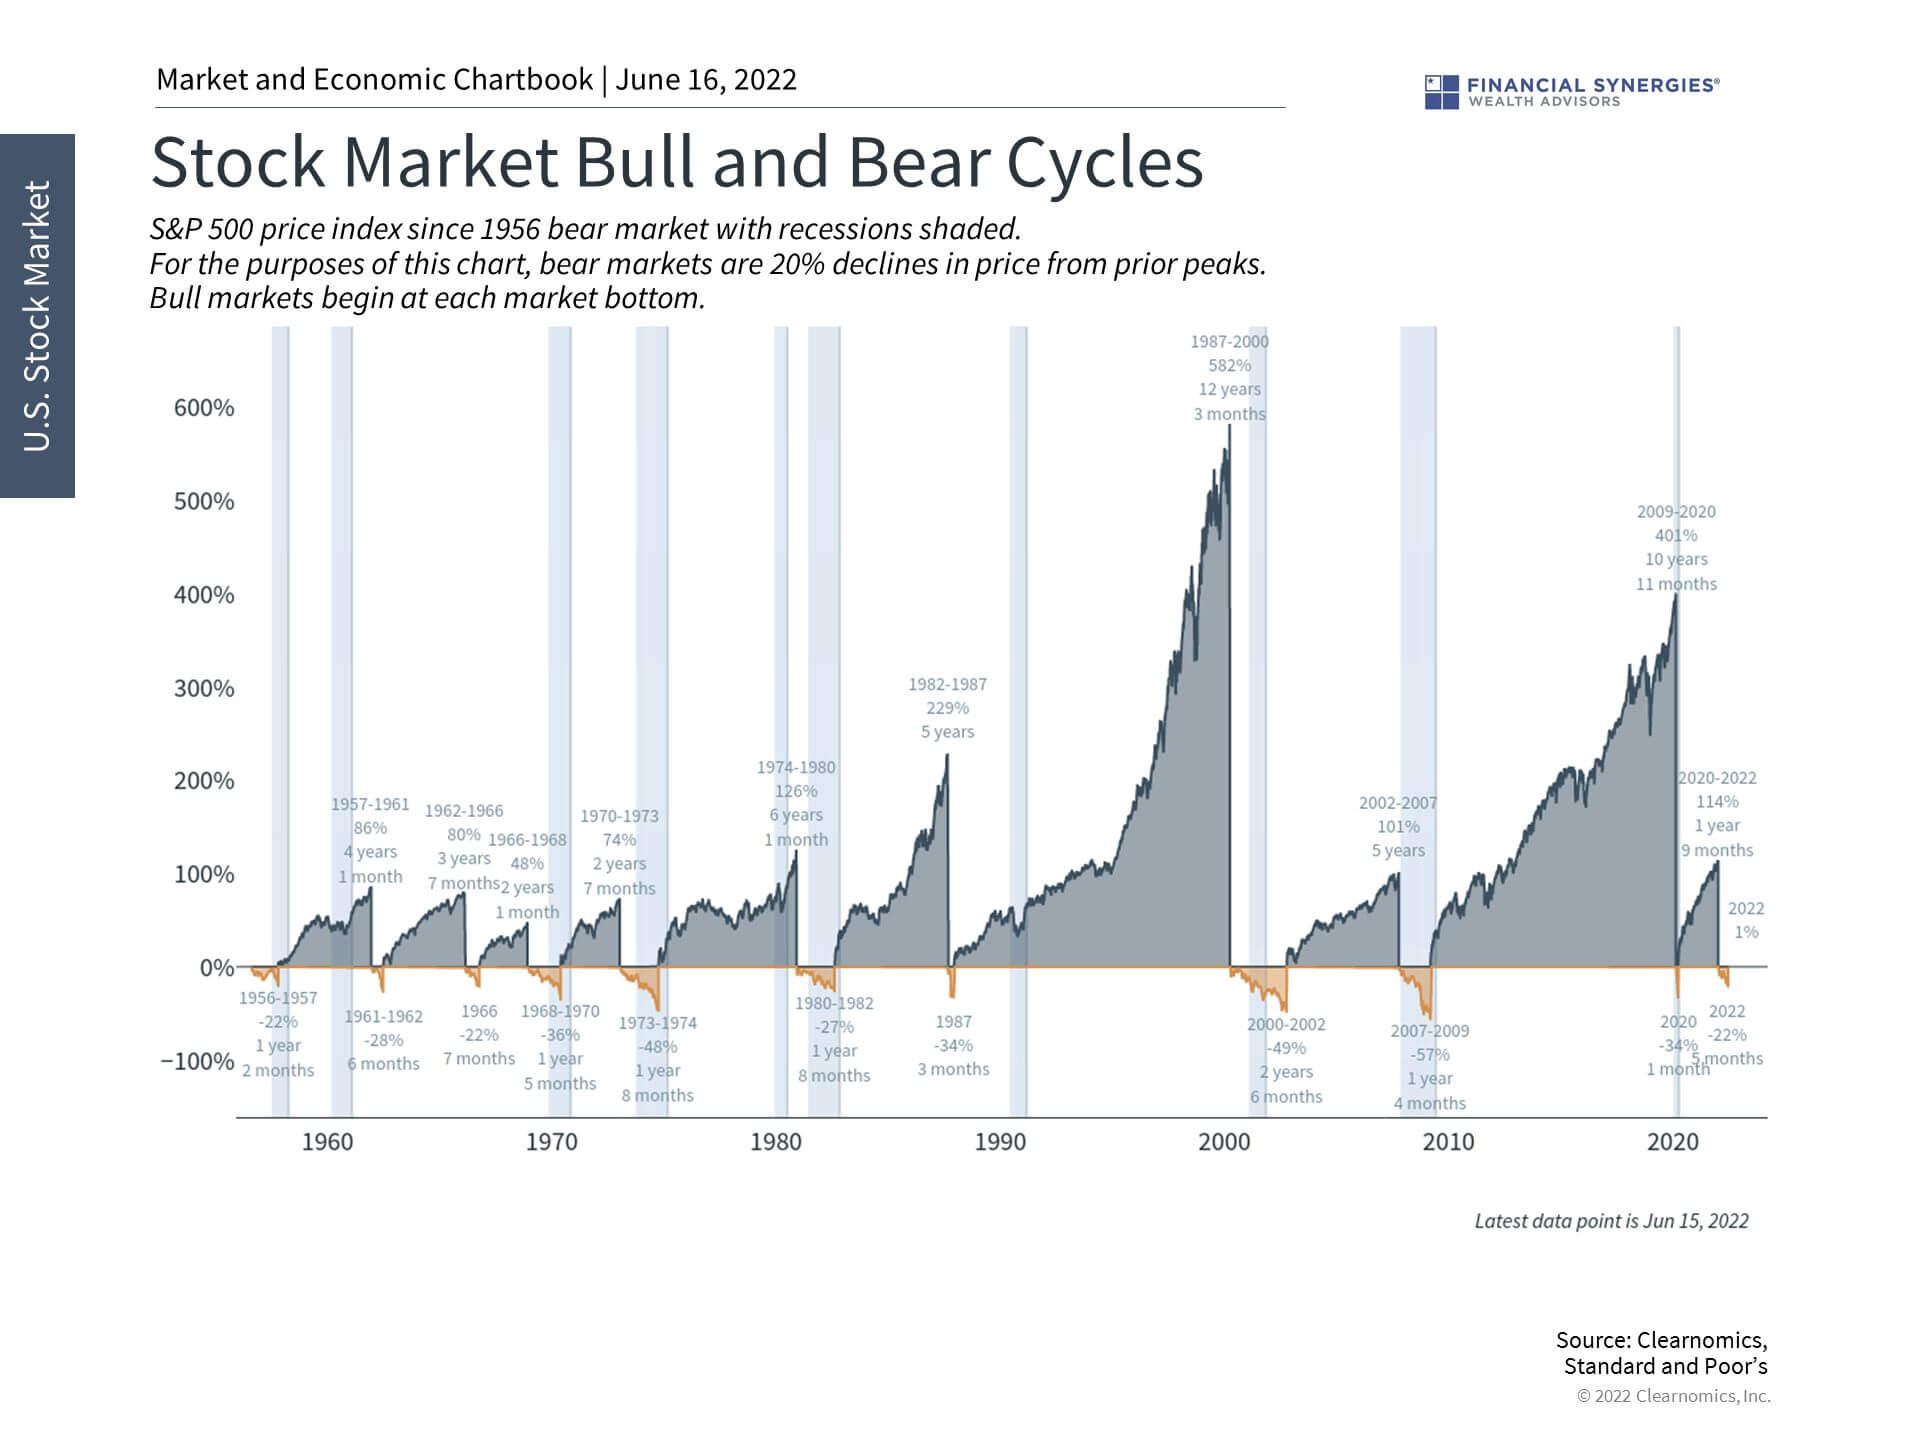 bull bear cycles